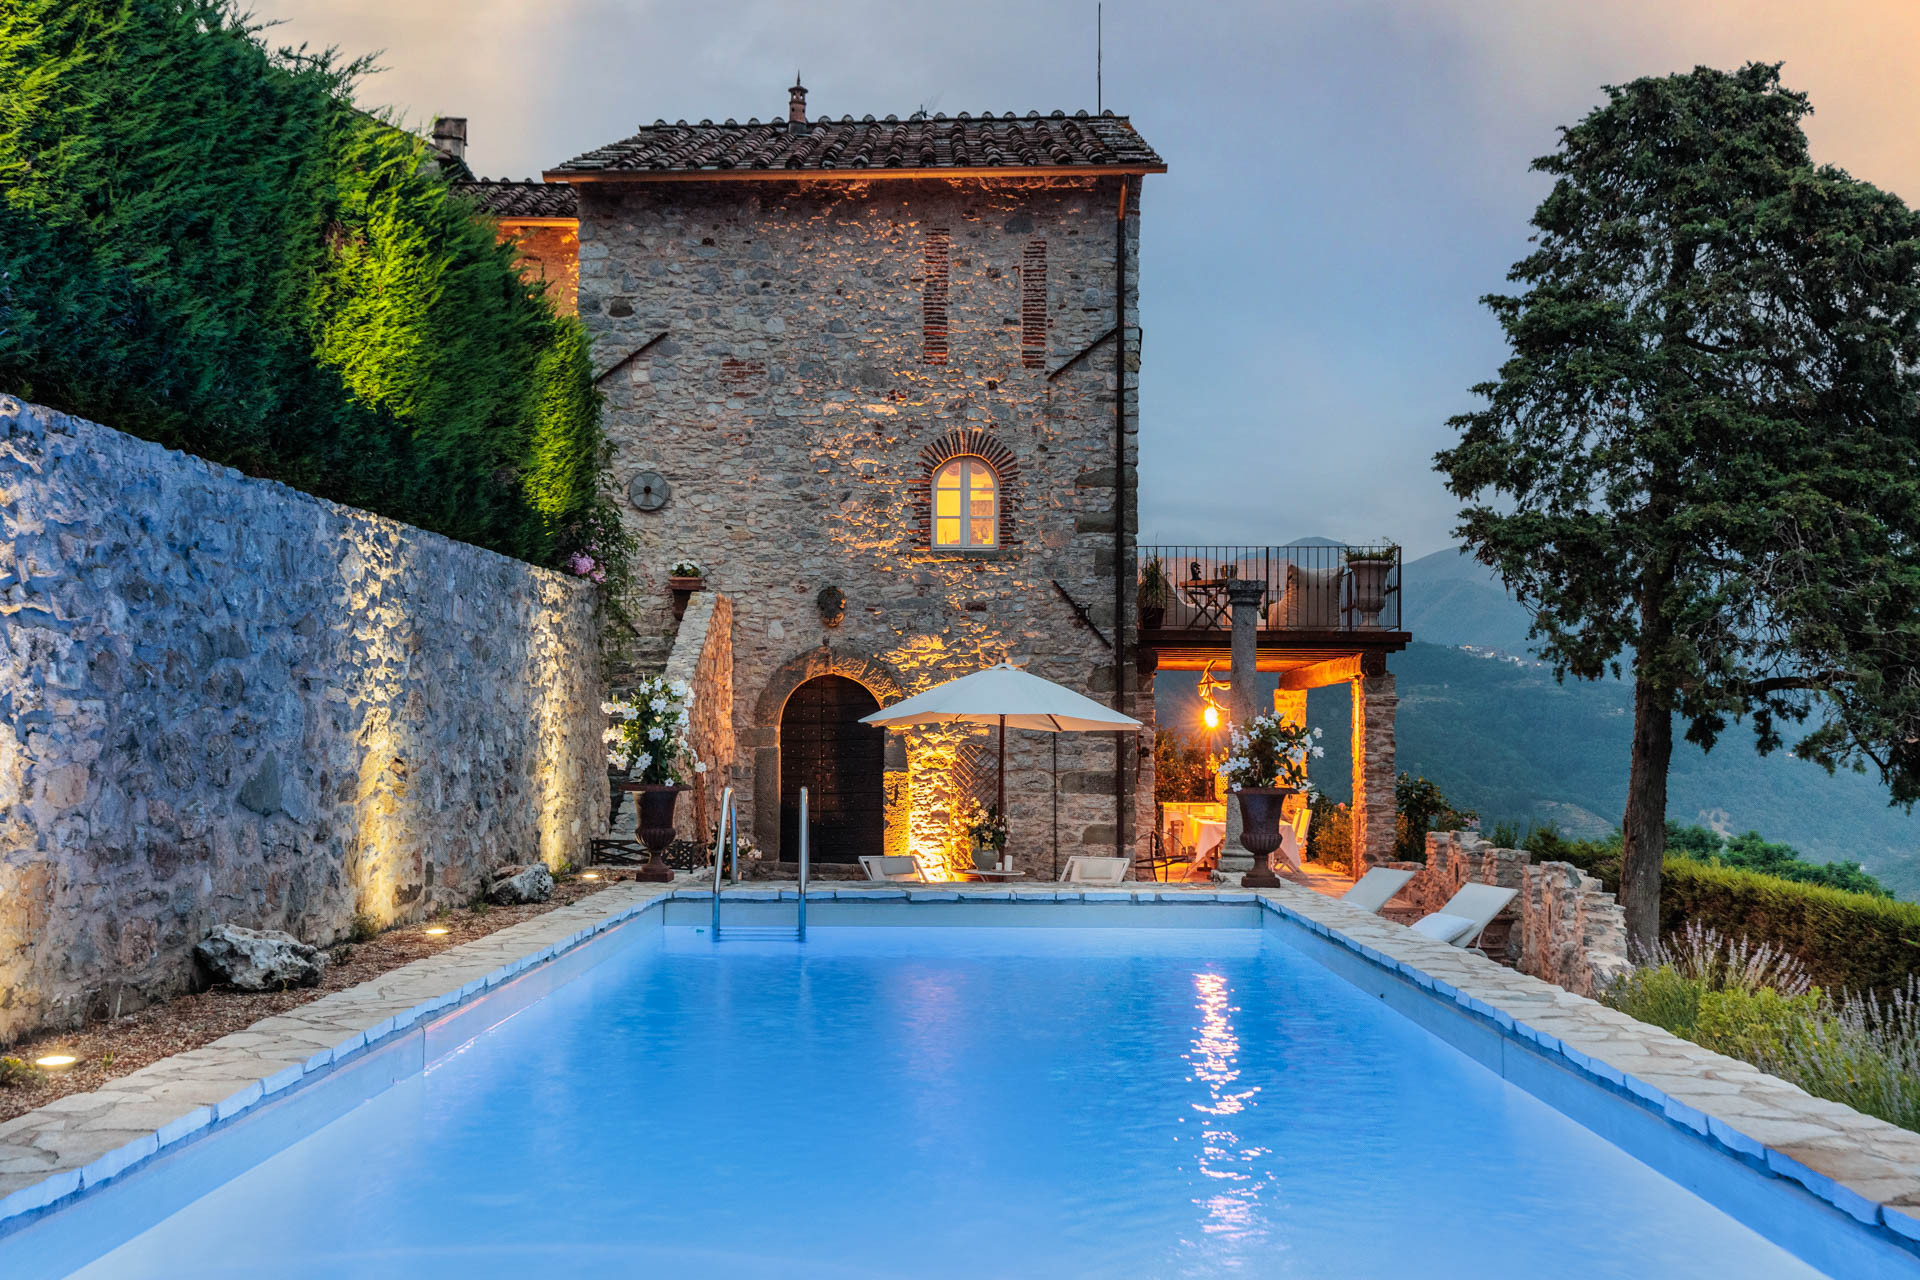 Villa/Dettached house in Borgo a Mozzano - Gran Burrone Castle, a Luxury Castle with Pool in Borgo a Mozzano close to Lucca and Garfagnana